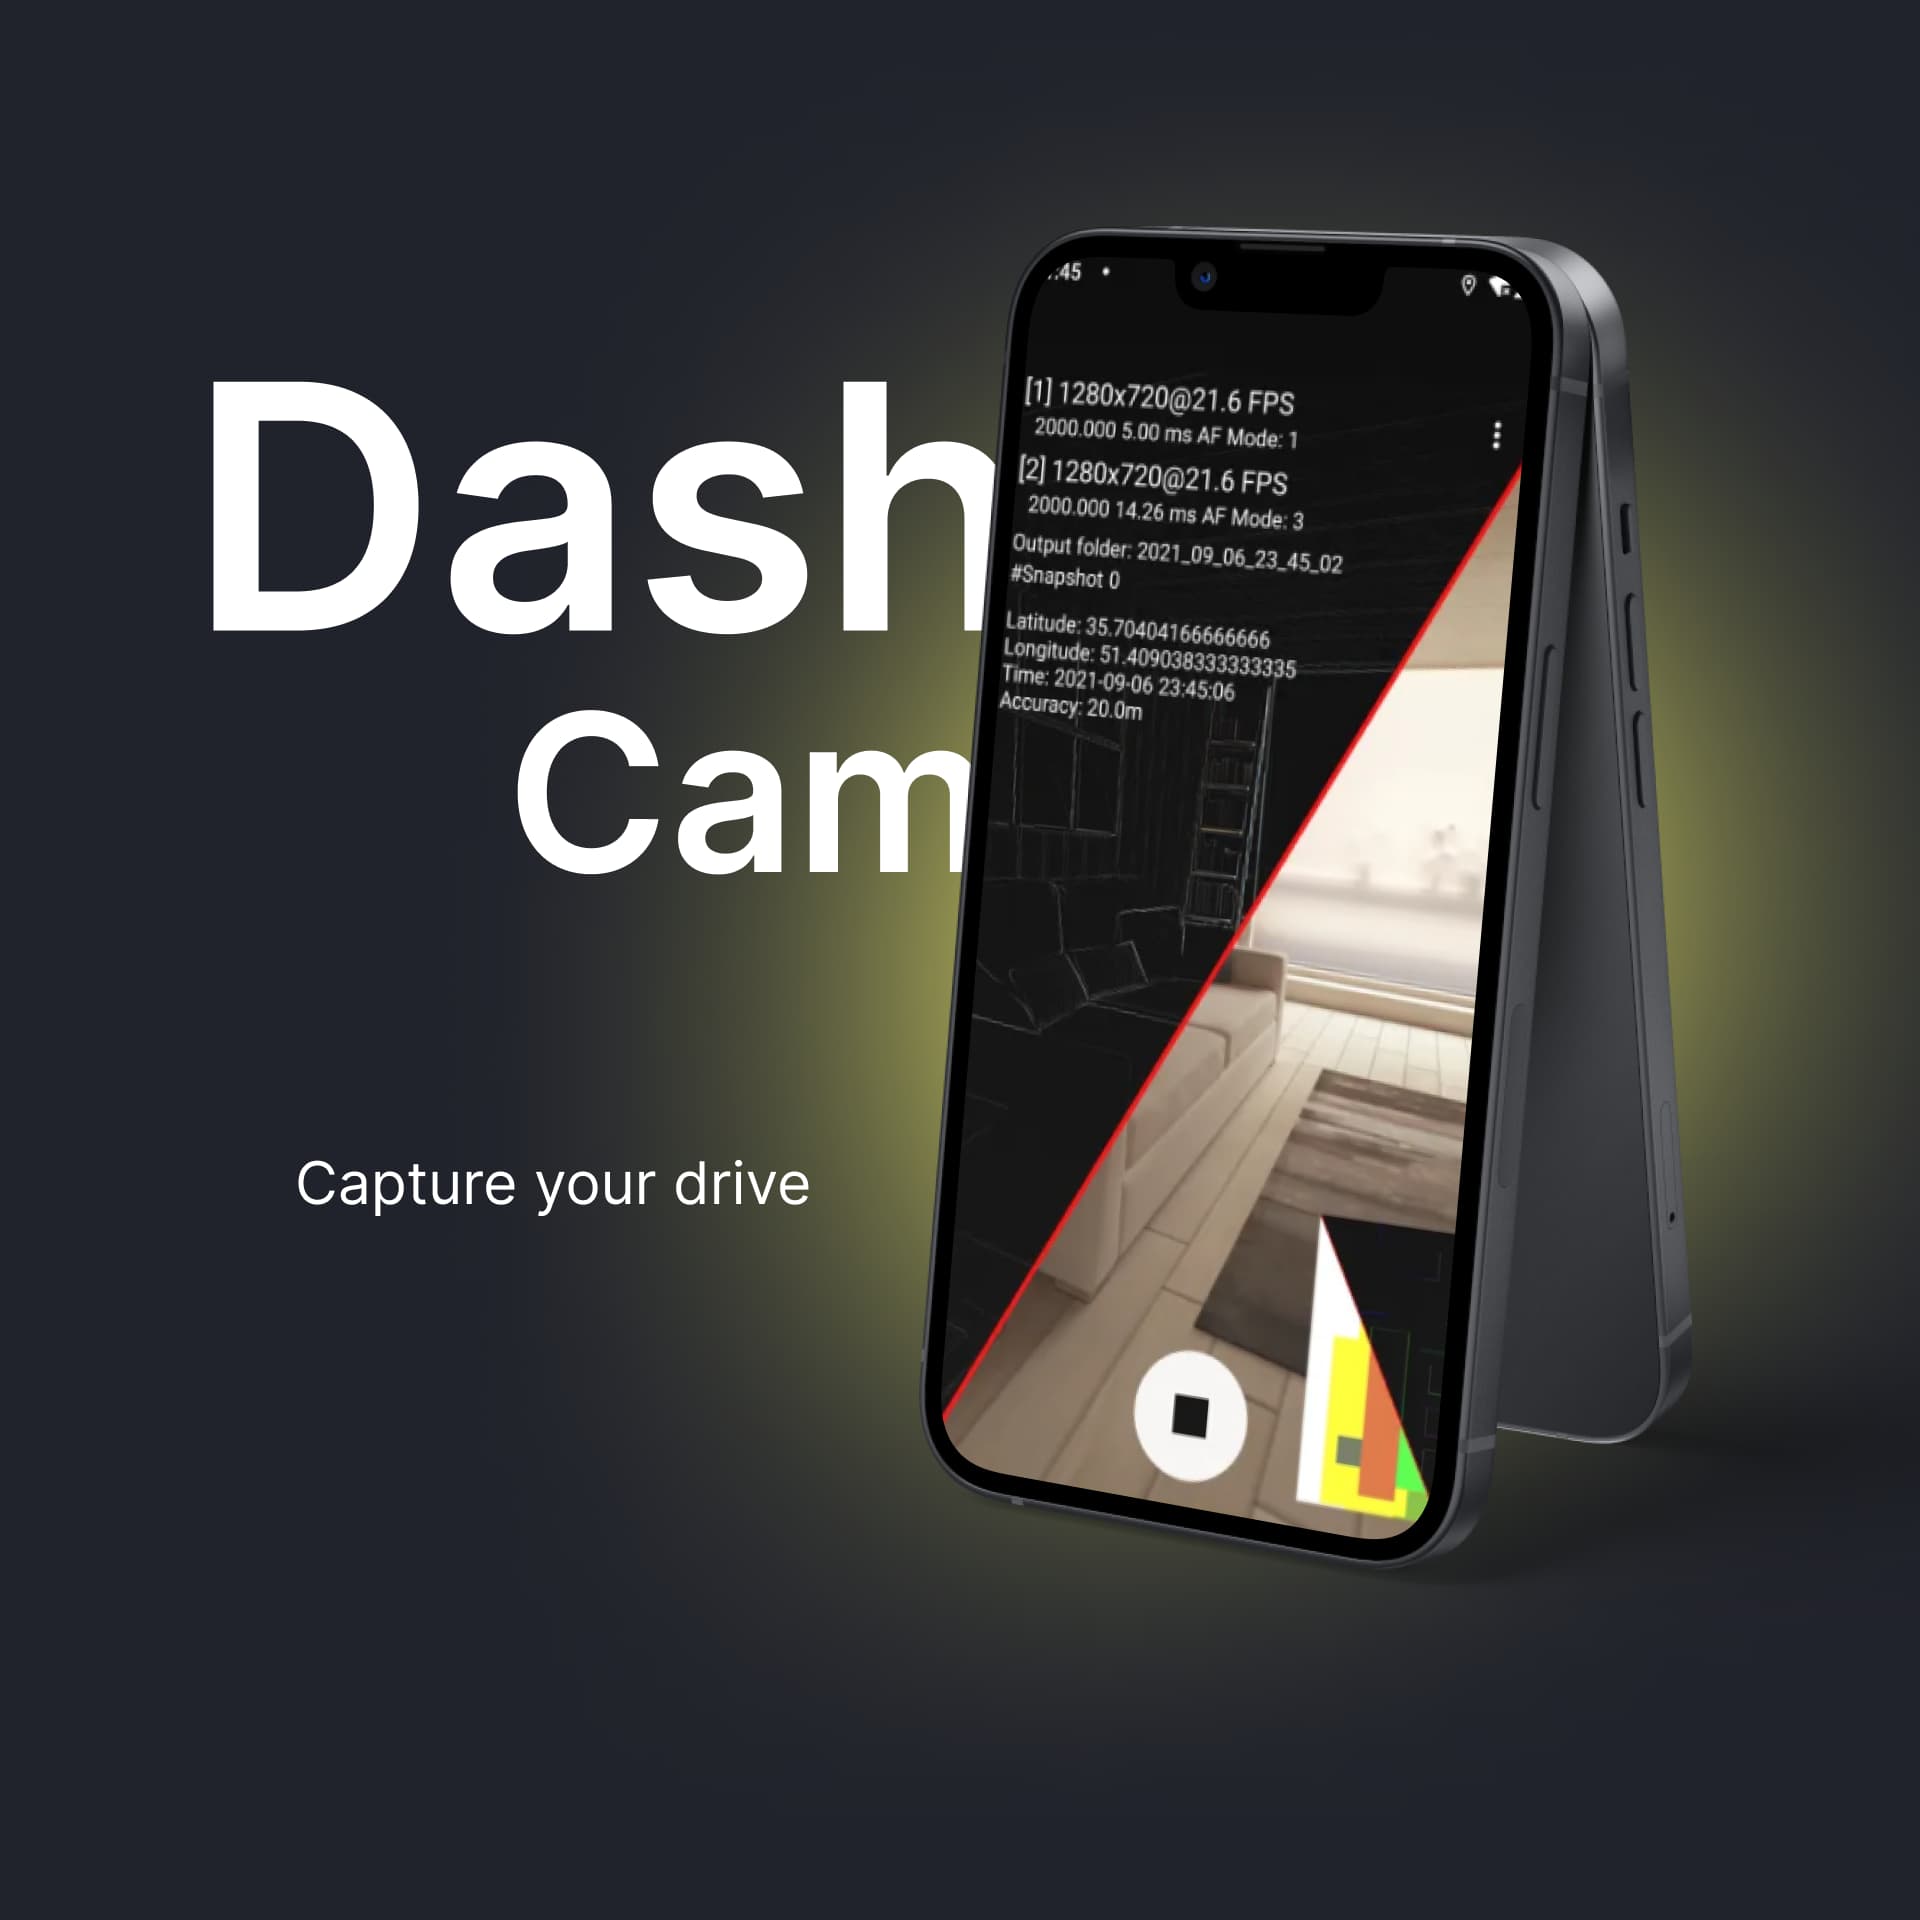 DashCam App with AI Integration